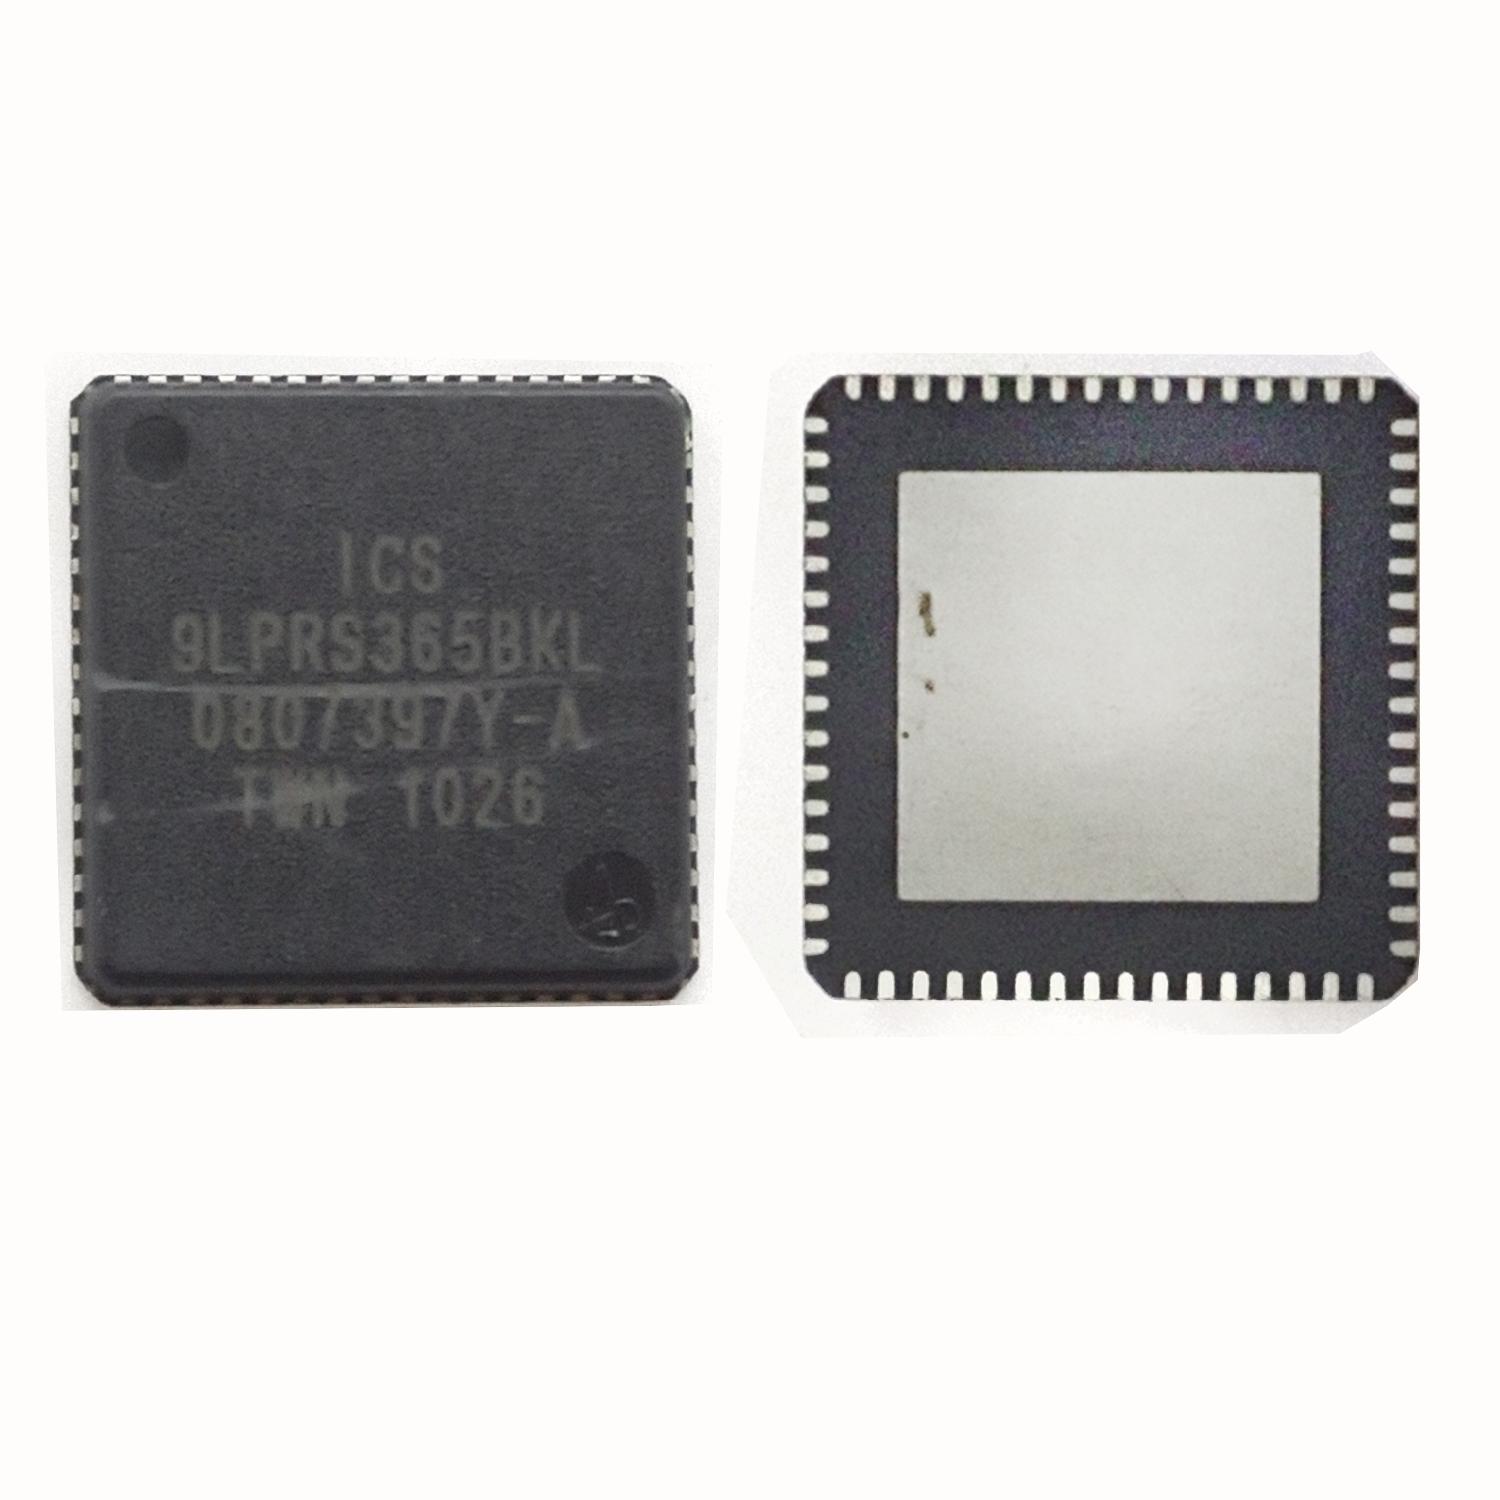 Микросхема ICS 9LPRS365BKLFT